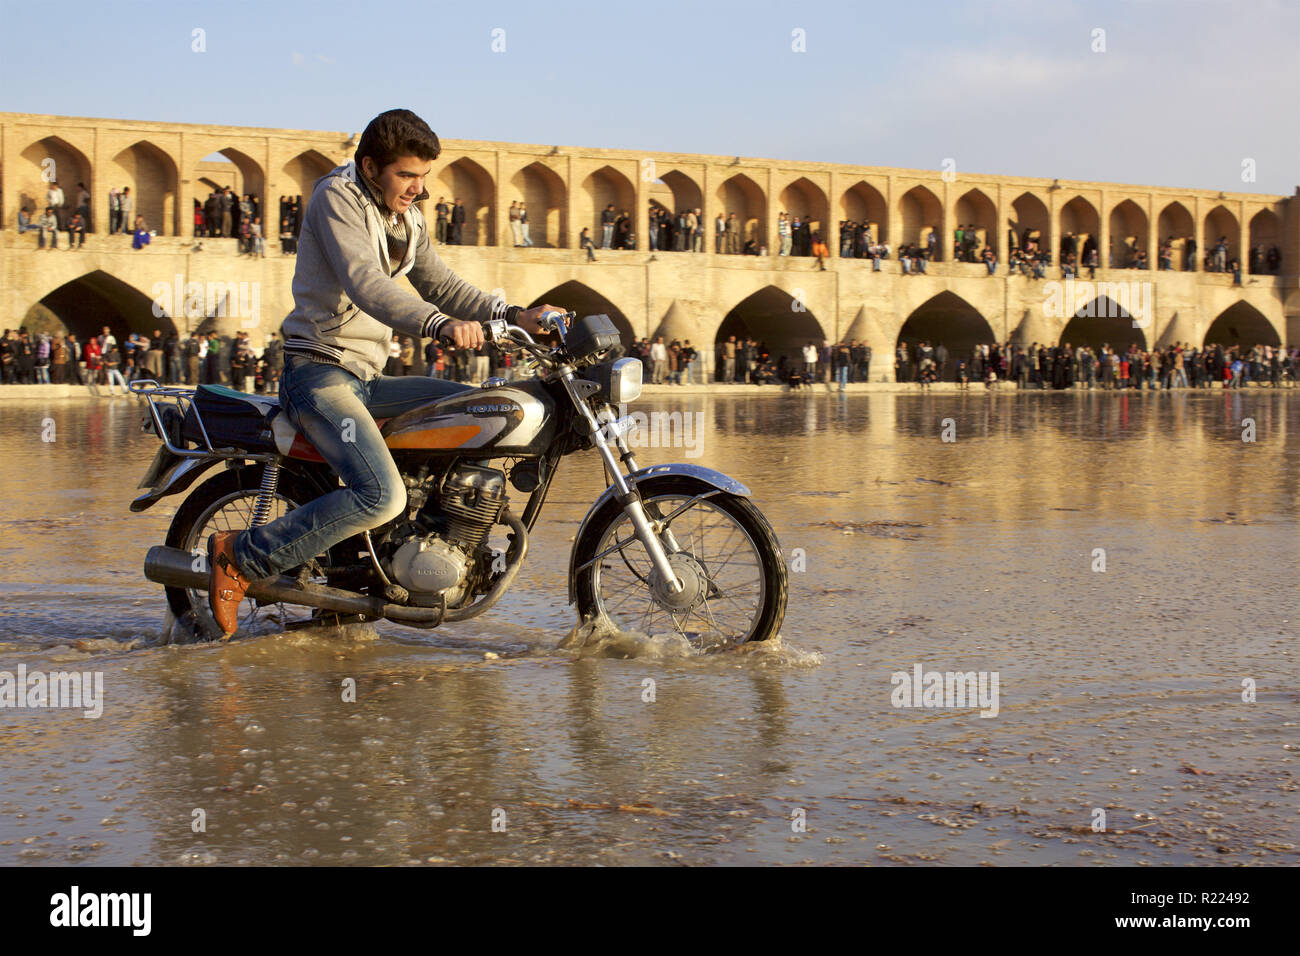 Iran : Isfahan 2011/11/07. Les gens en quête d'eau, à proximité de la pont Allahverdi Khan (plus connue sous le nom de Si-O-se-pol), de l'autre côté de la rivière Zayanderud. B Banque D'Images